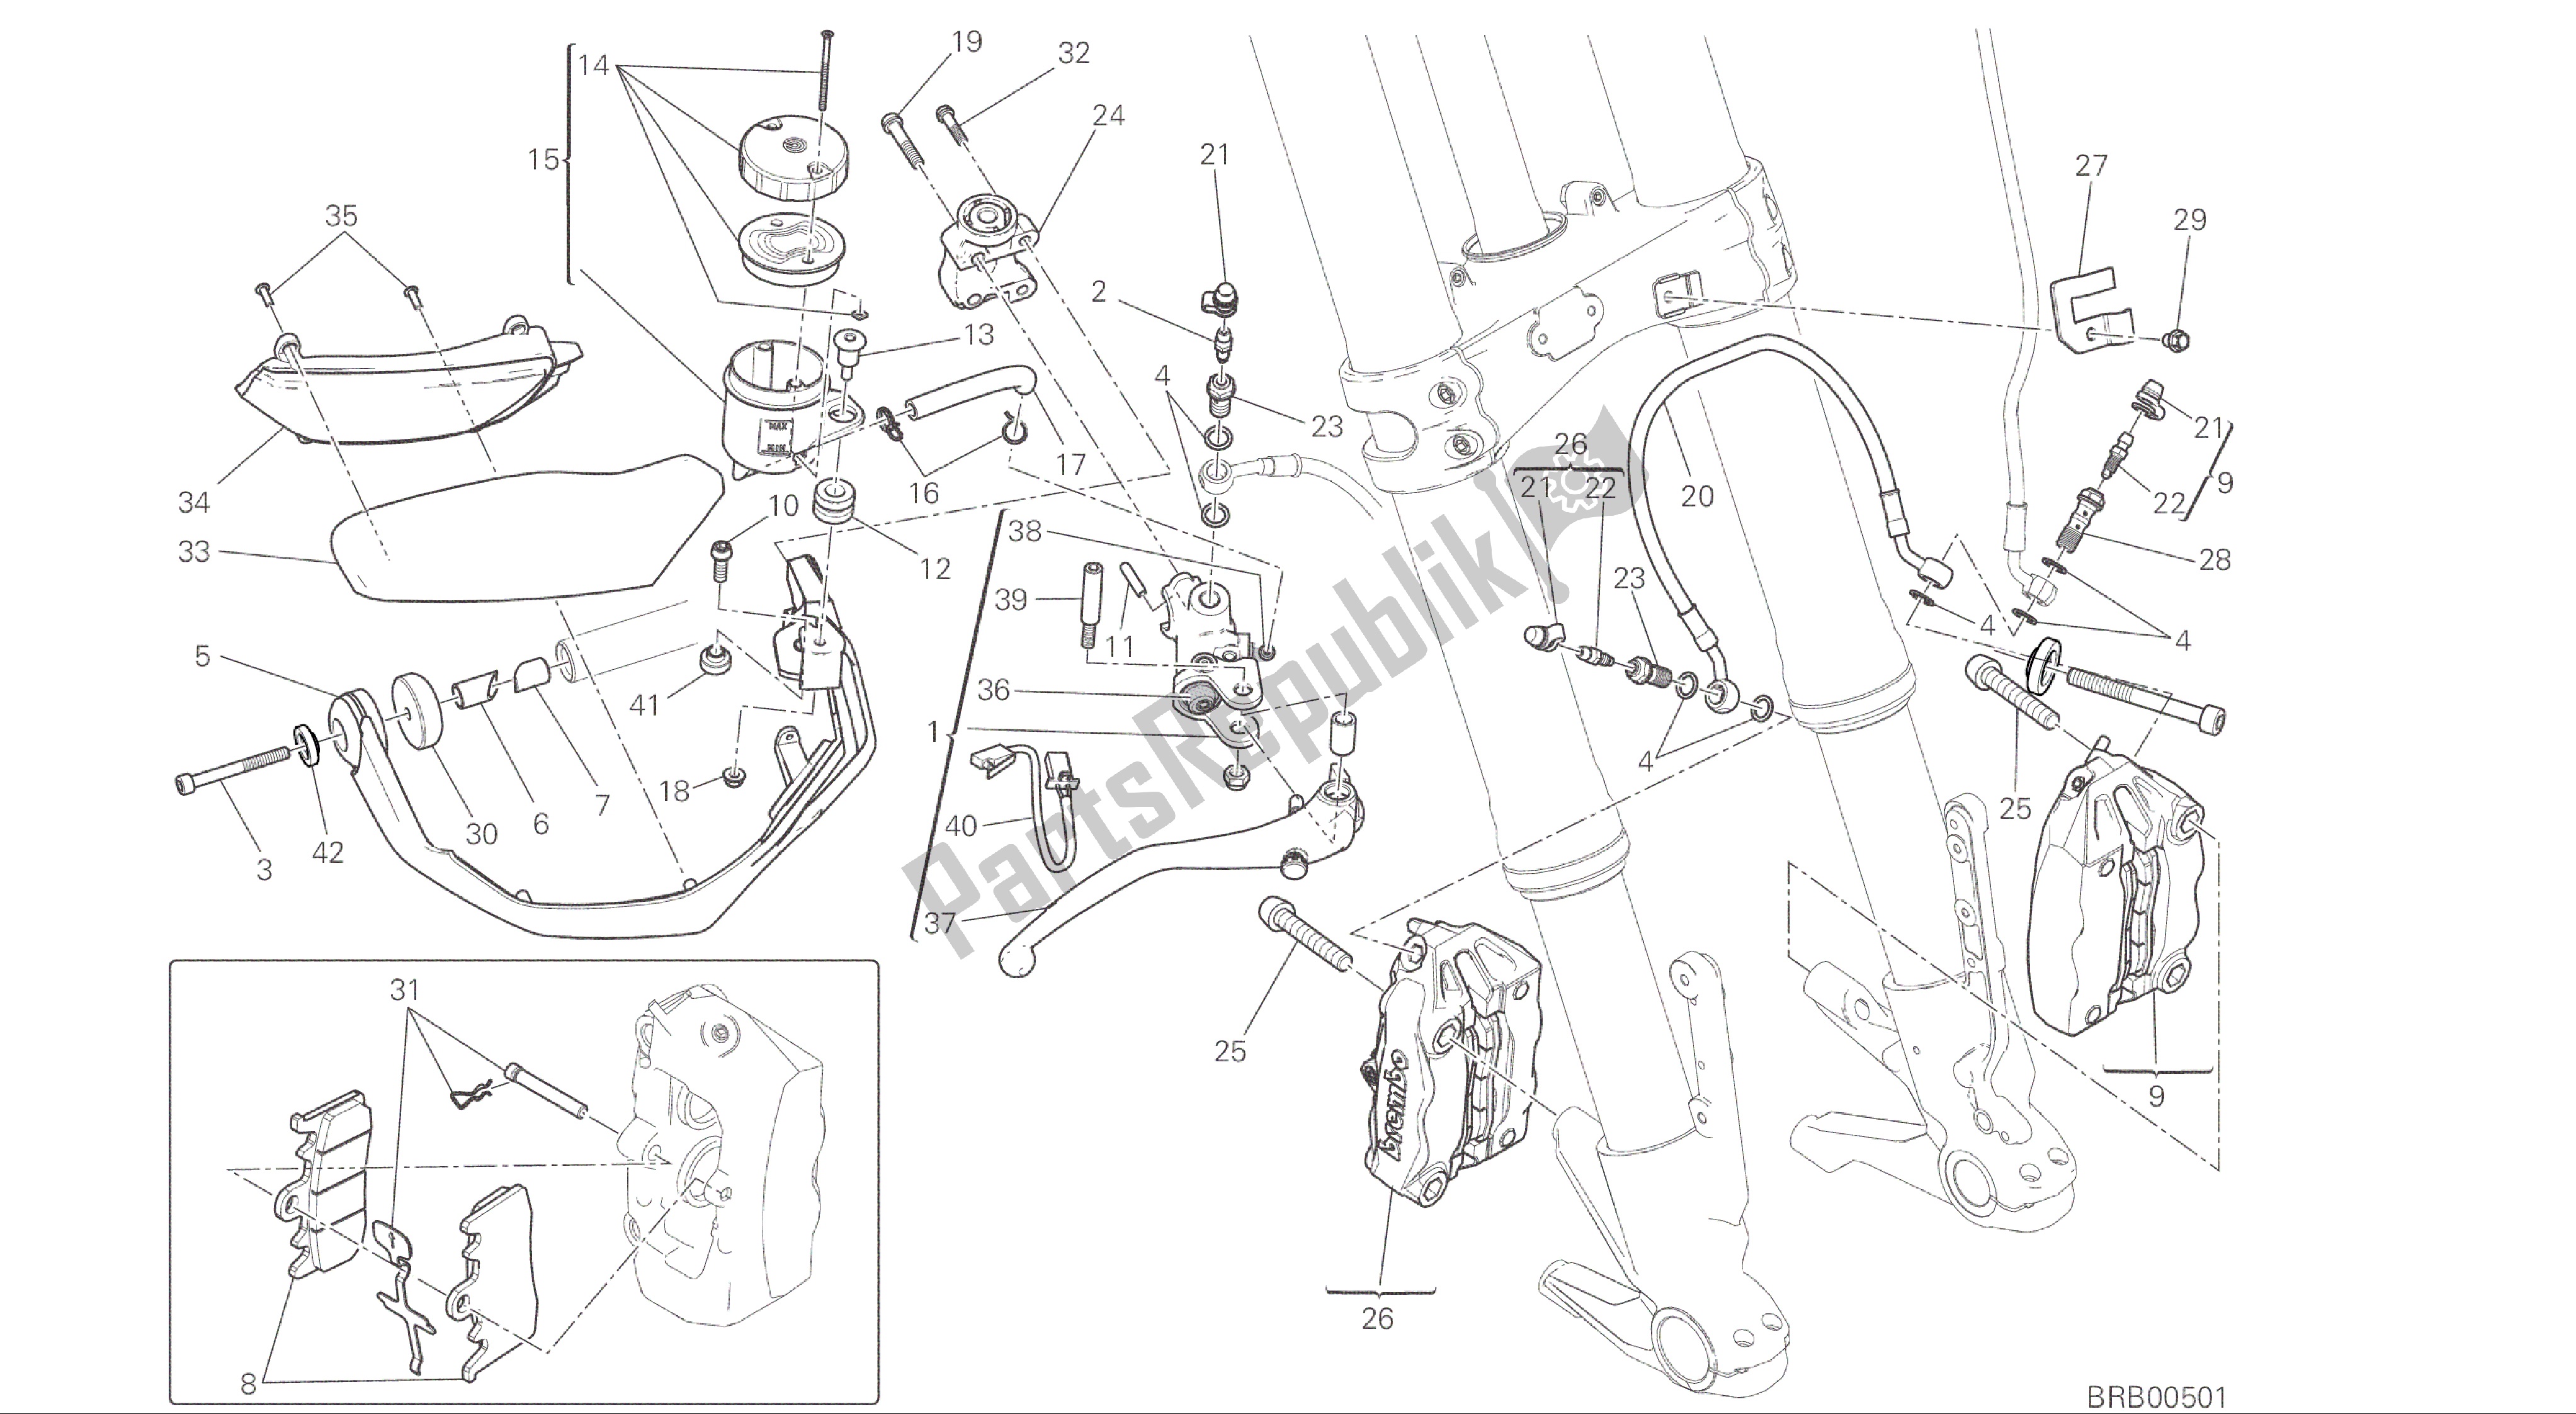 Tutte le parti per il Disegno 024 - Sistema Frenante Anteriore [mod: Ms1200; Xst: Aus, Eur, Fra, Jap] Gruppo Telaio del Ducati Multistrada 1200 2015